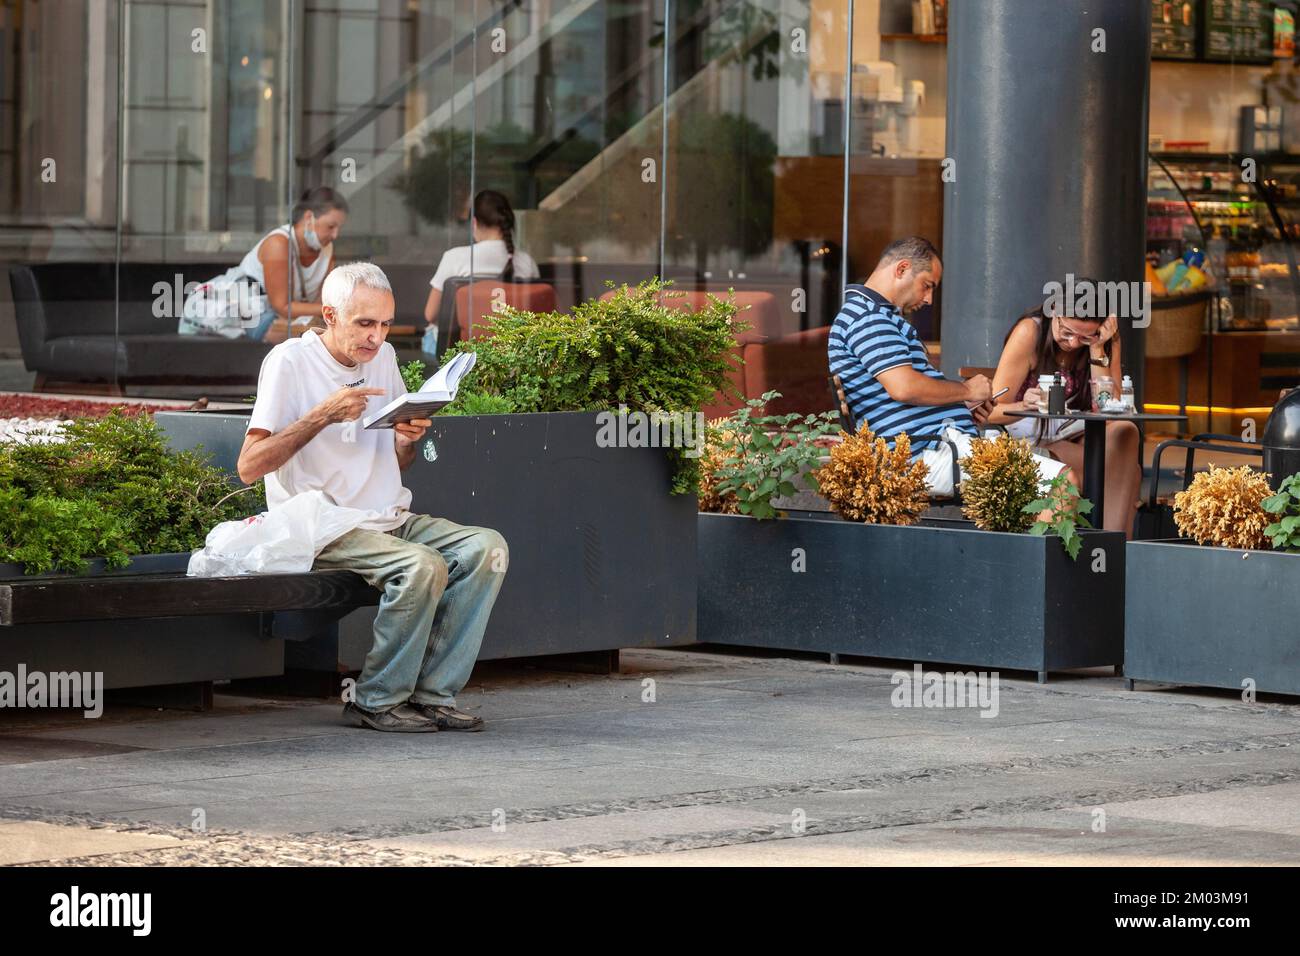 Imagen de un anciano sentado en un banco público leyendo un libro al aire libre en Belgrado, la ciudad más grande de Serbia. Foto de stock